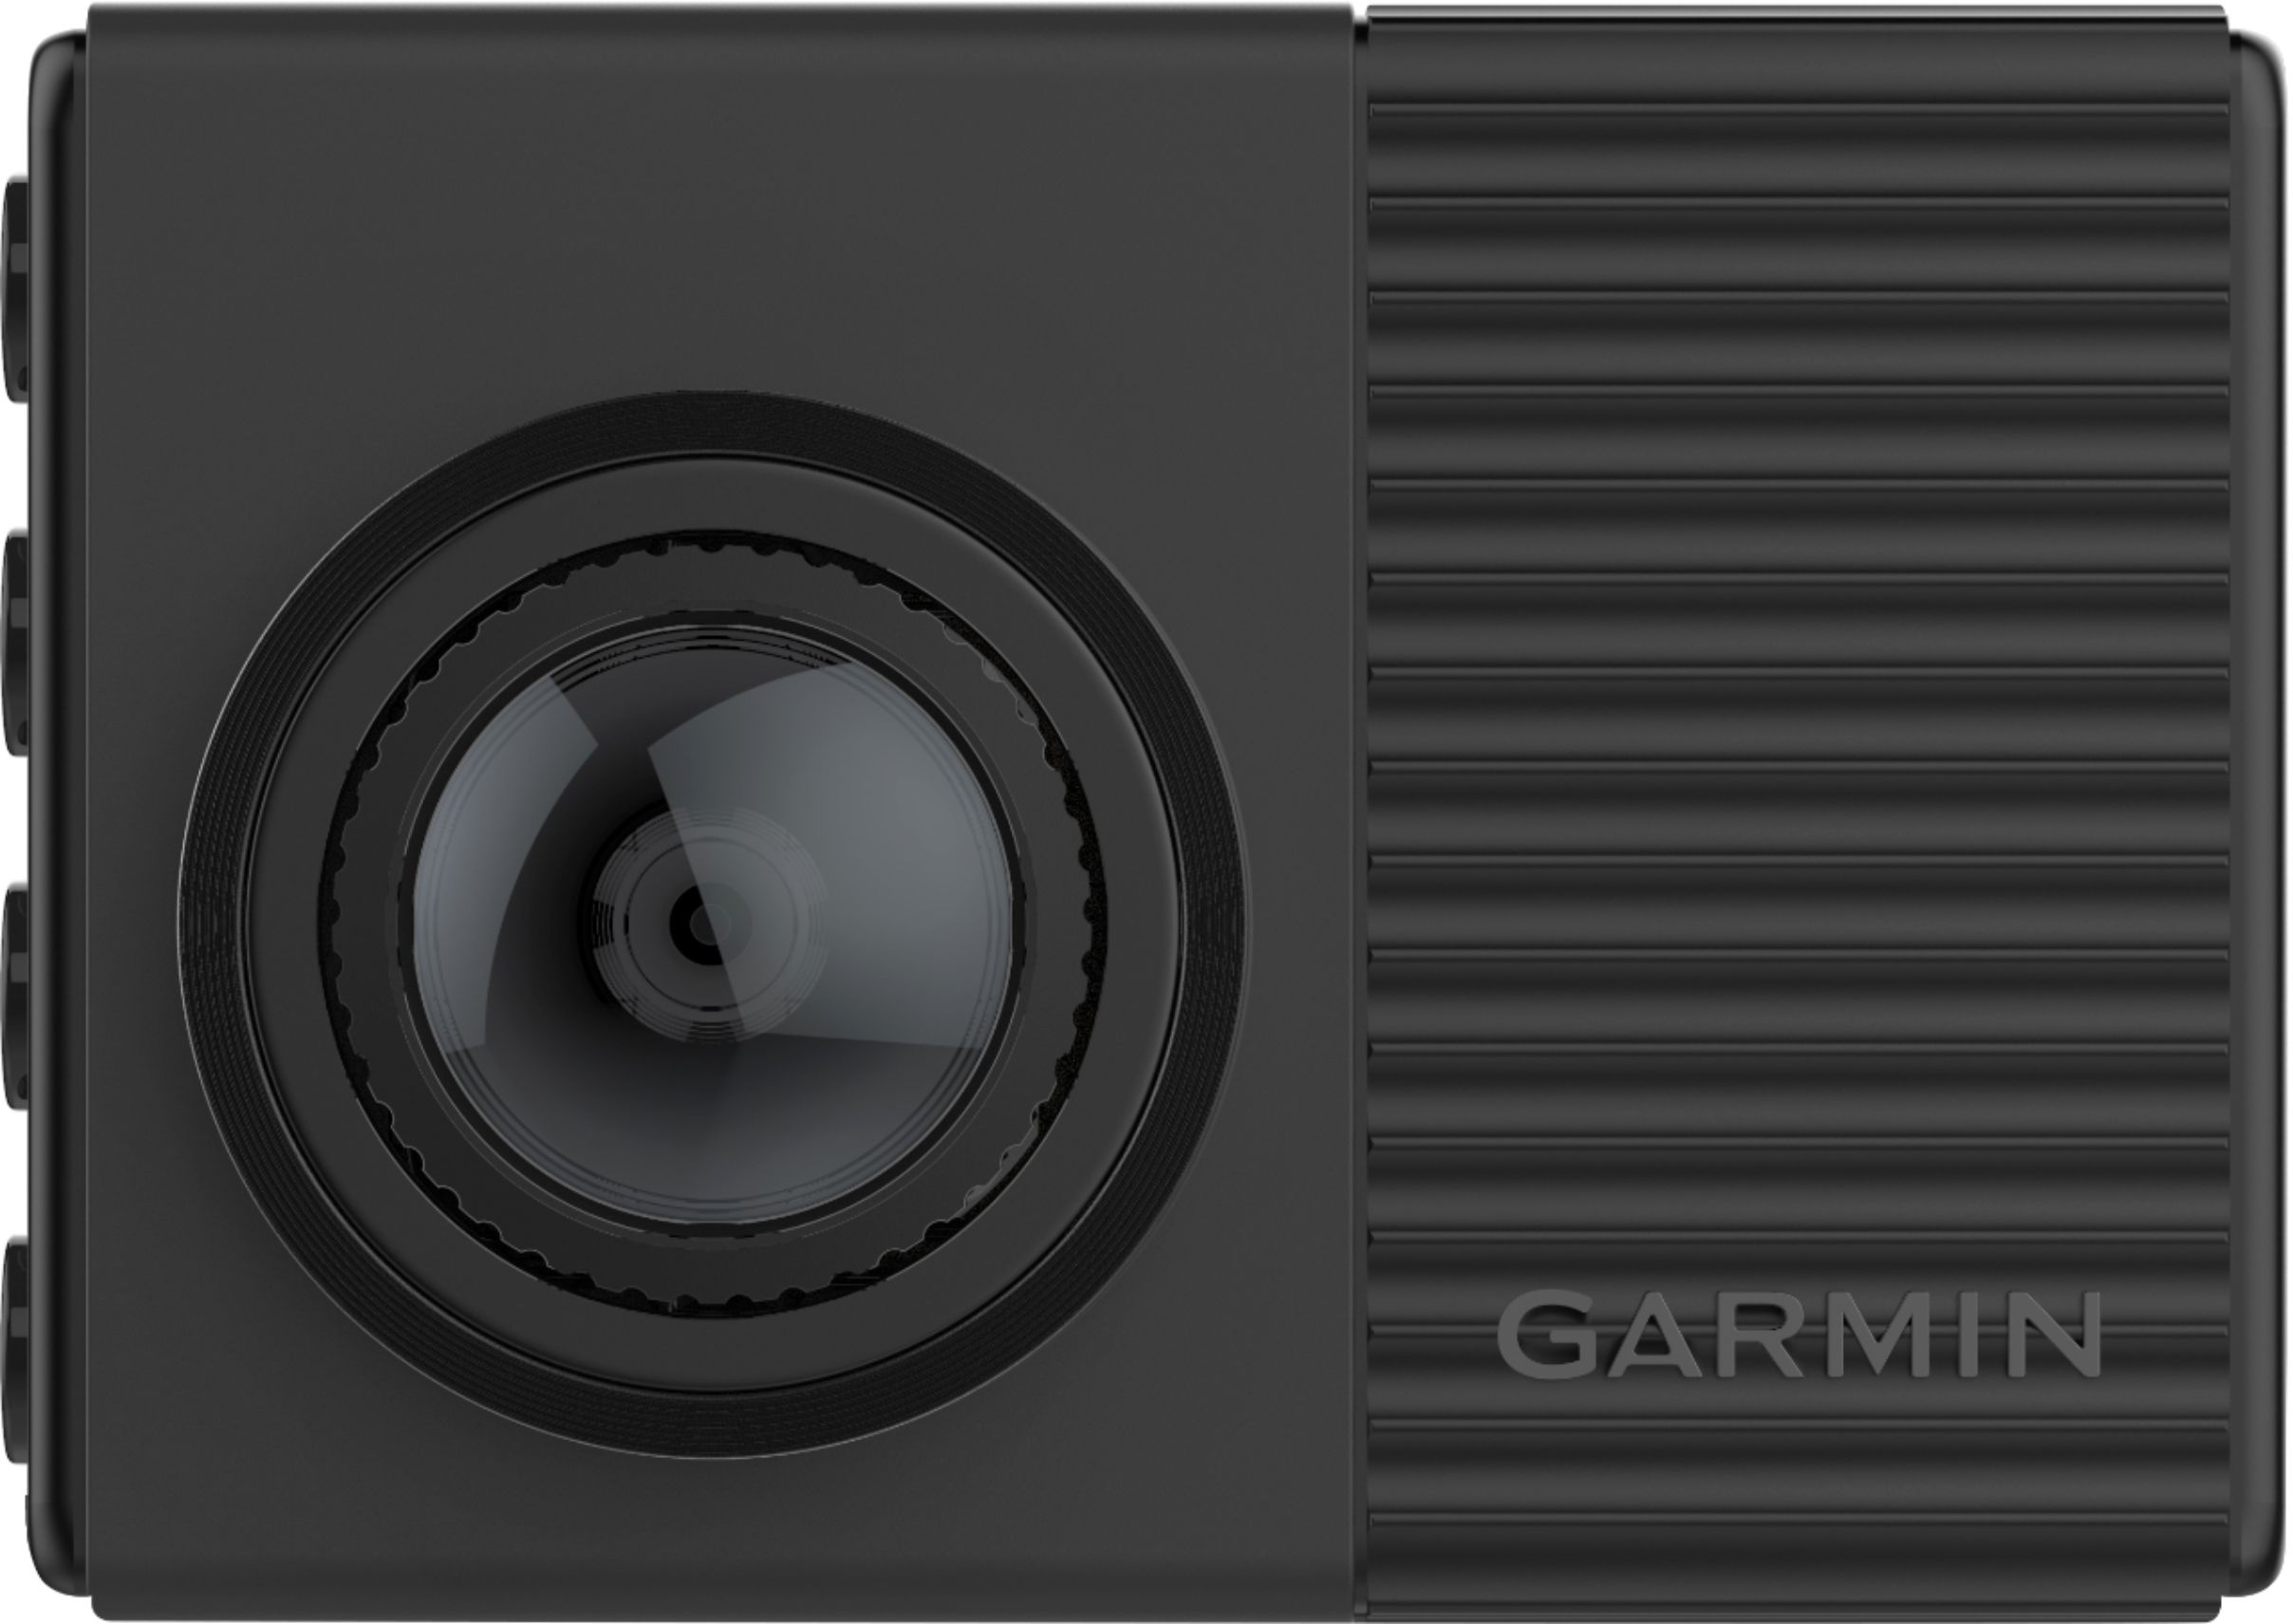 Garmin Dash Cam - Let's Truck